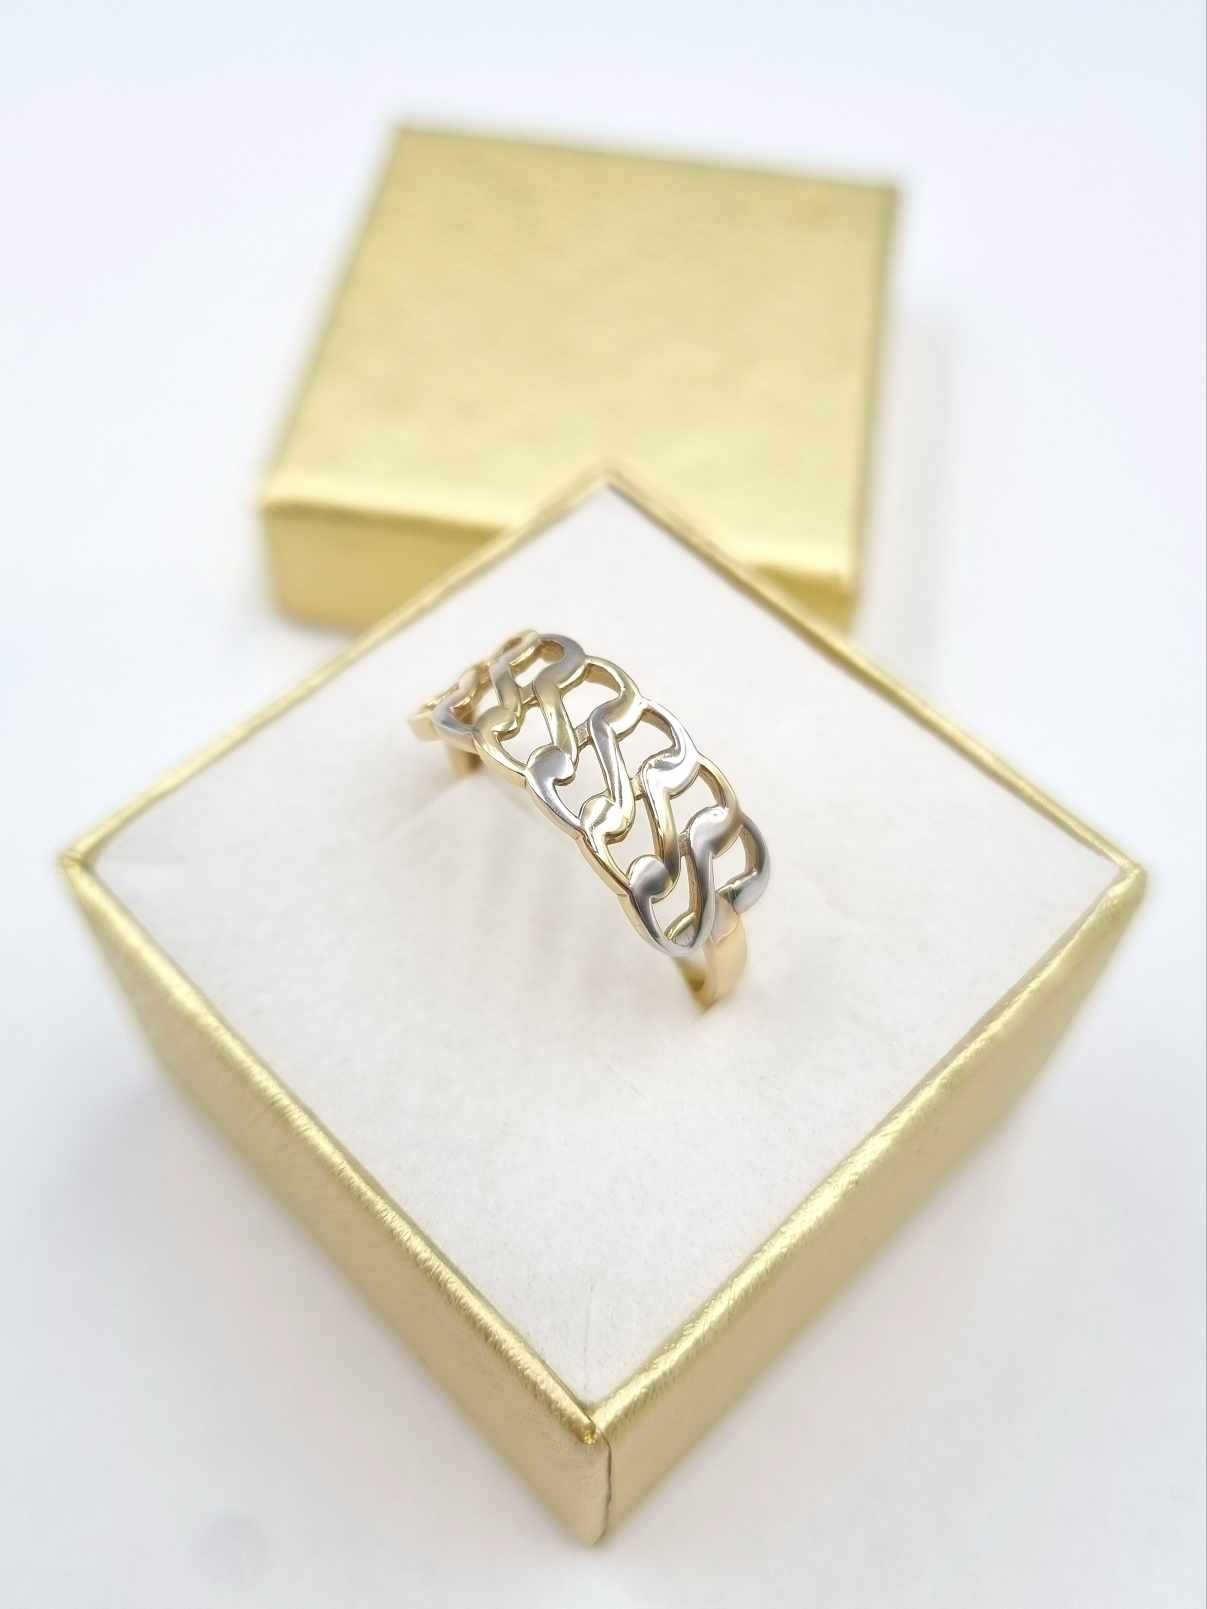 NOWY Niespotykany złoty pierścionek 585 14K r.20 2,11g żółte + białe